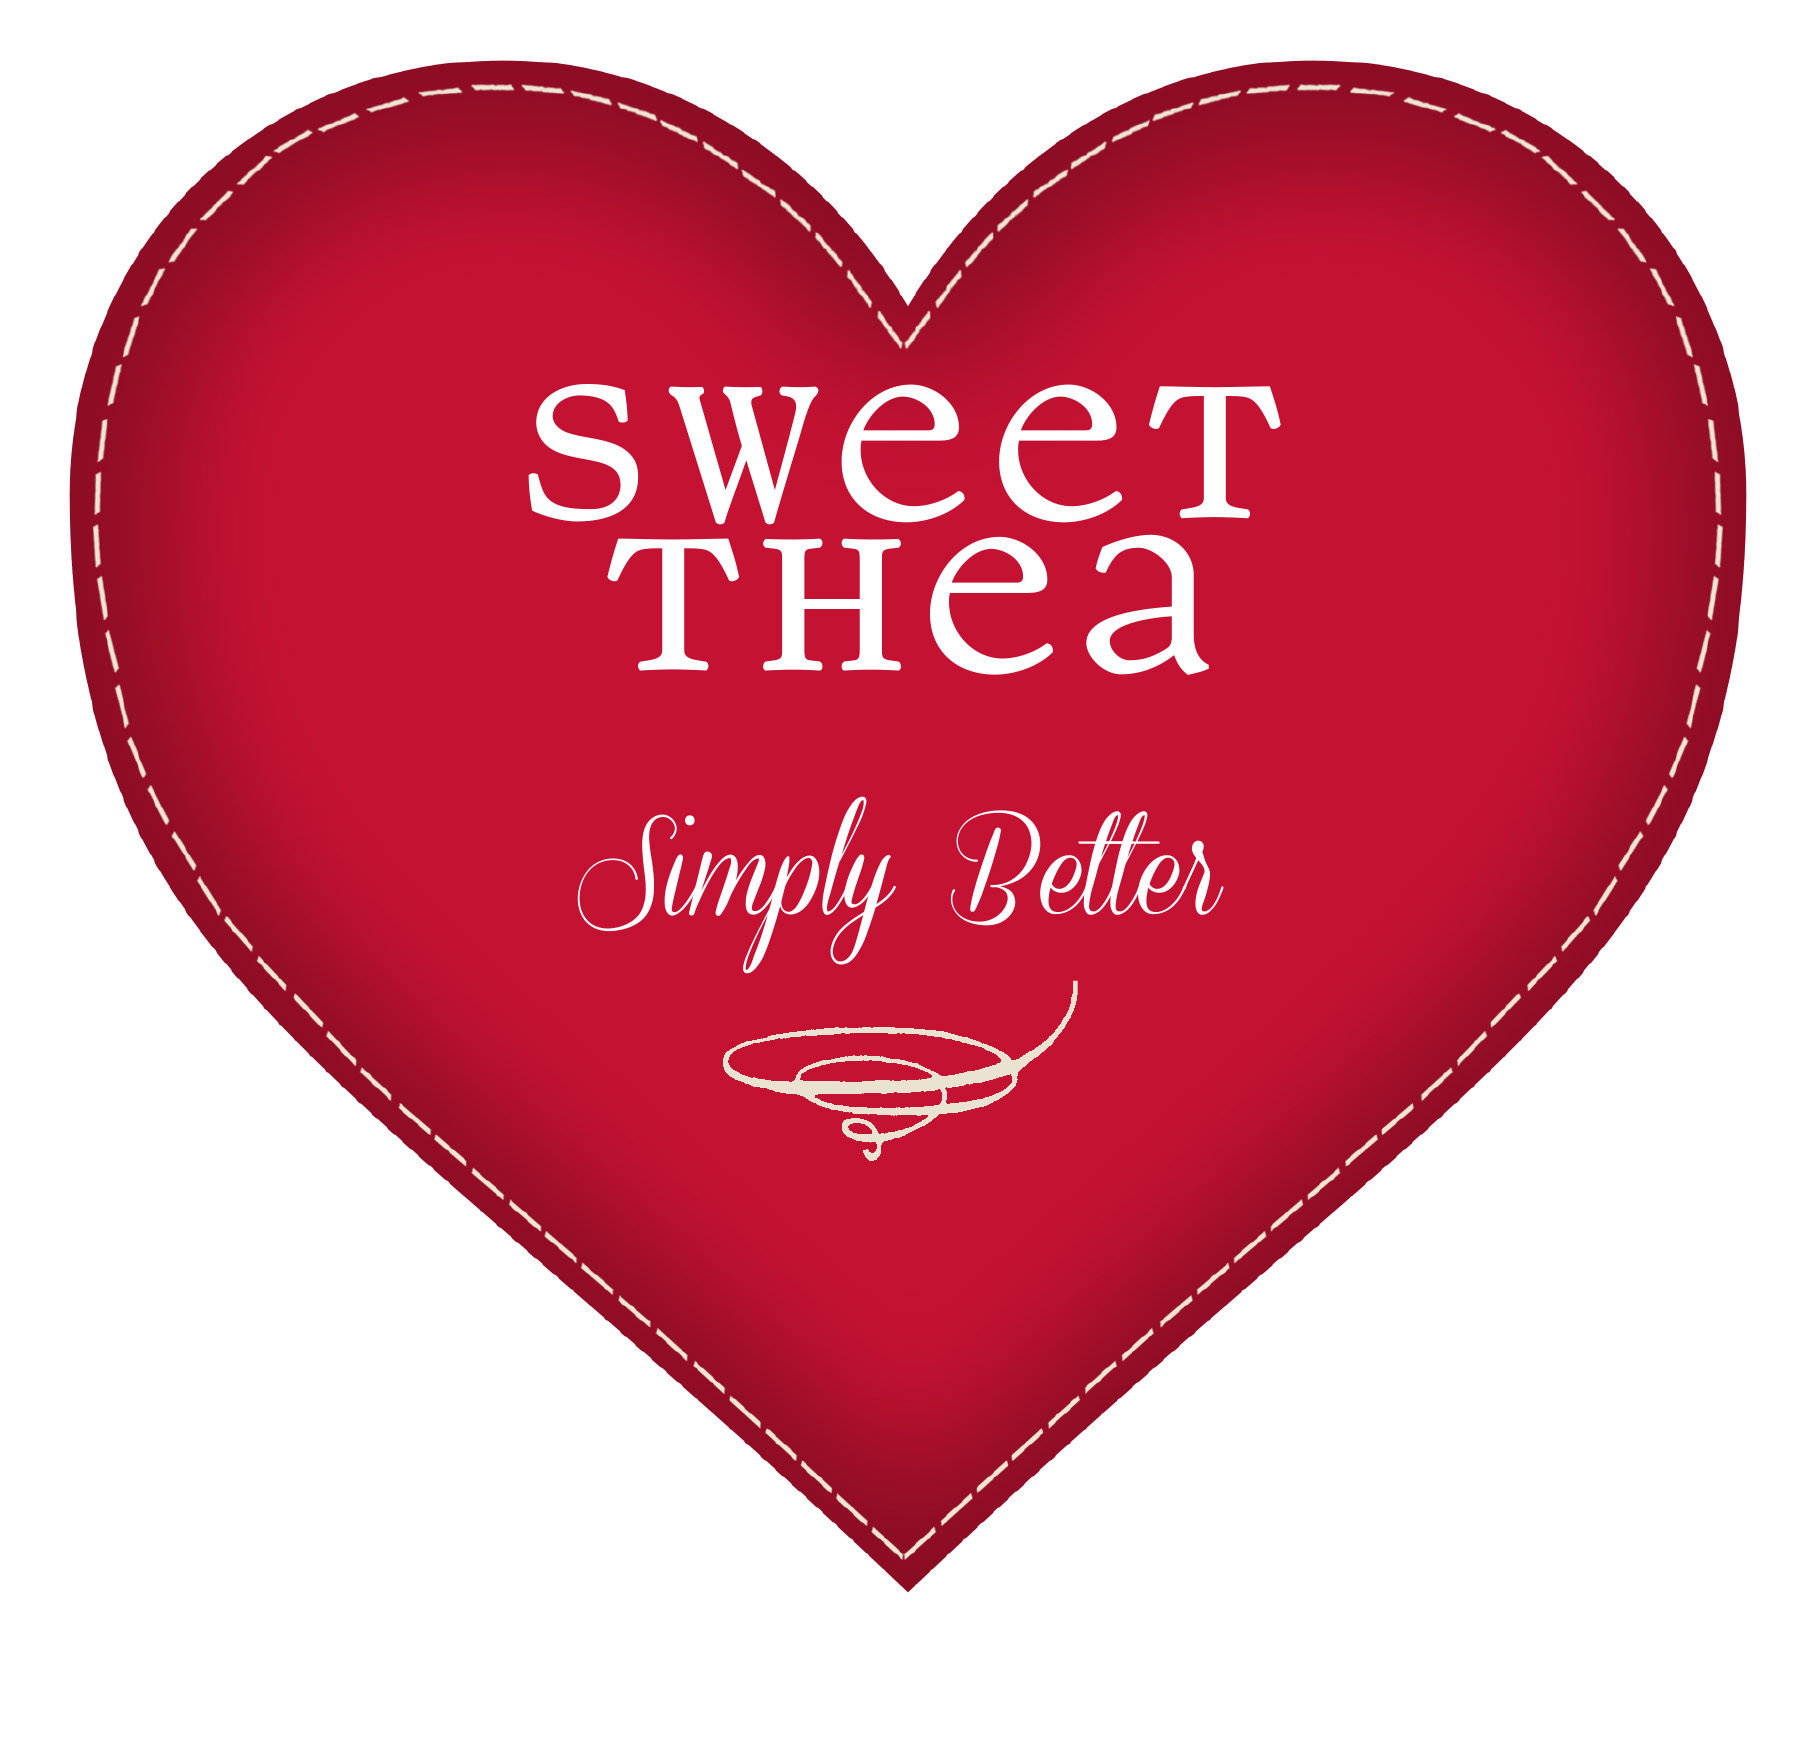 Sweet Thea Bakery Ltd.